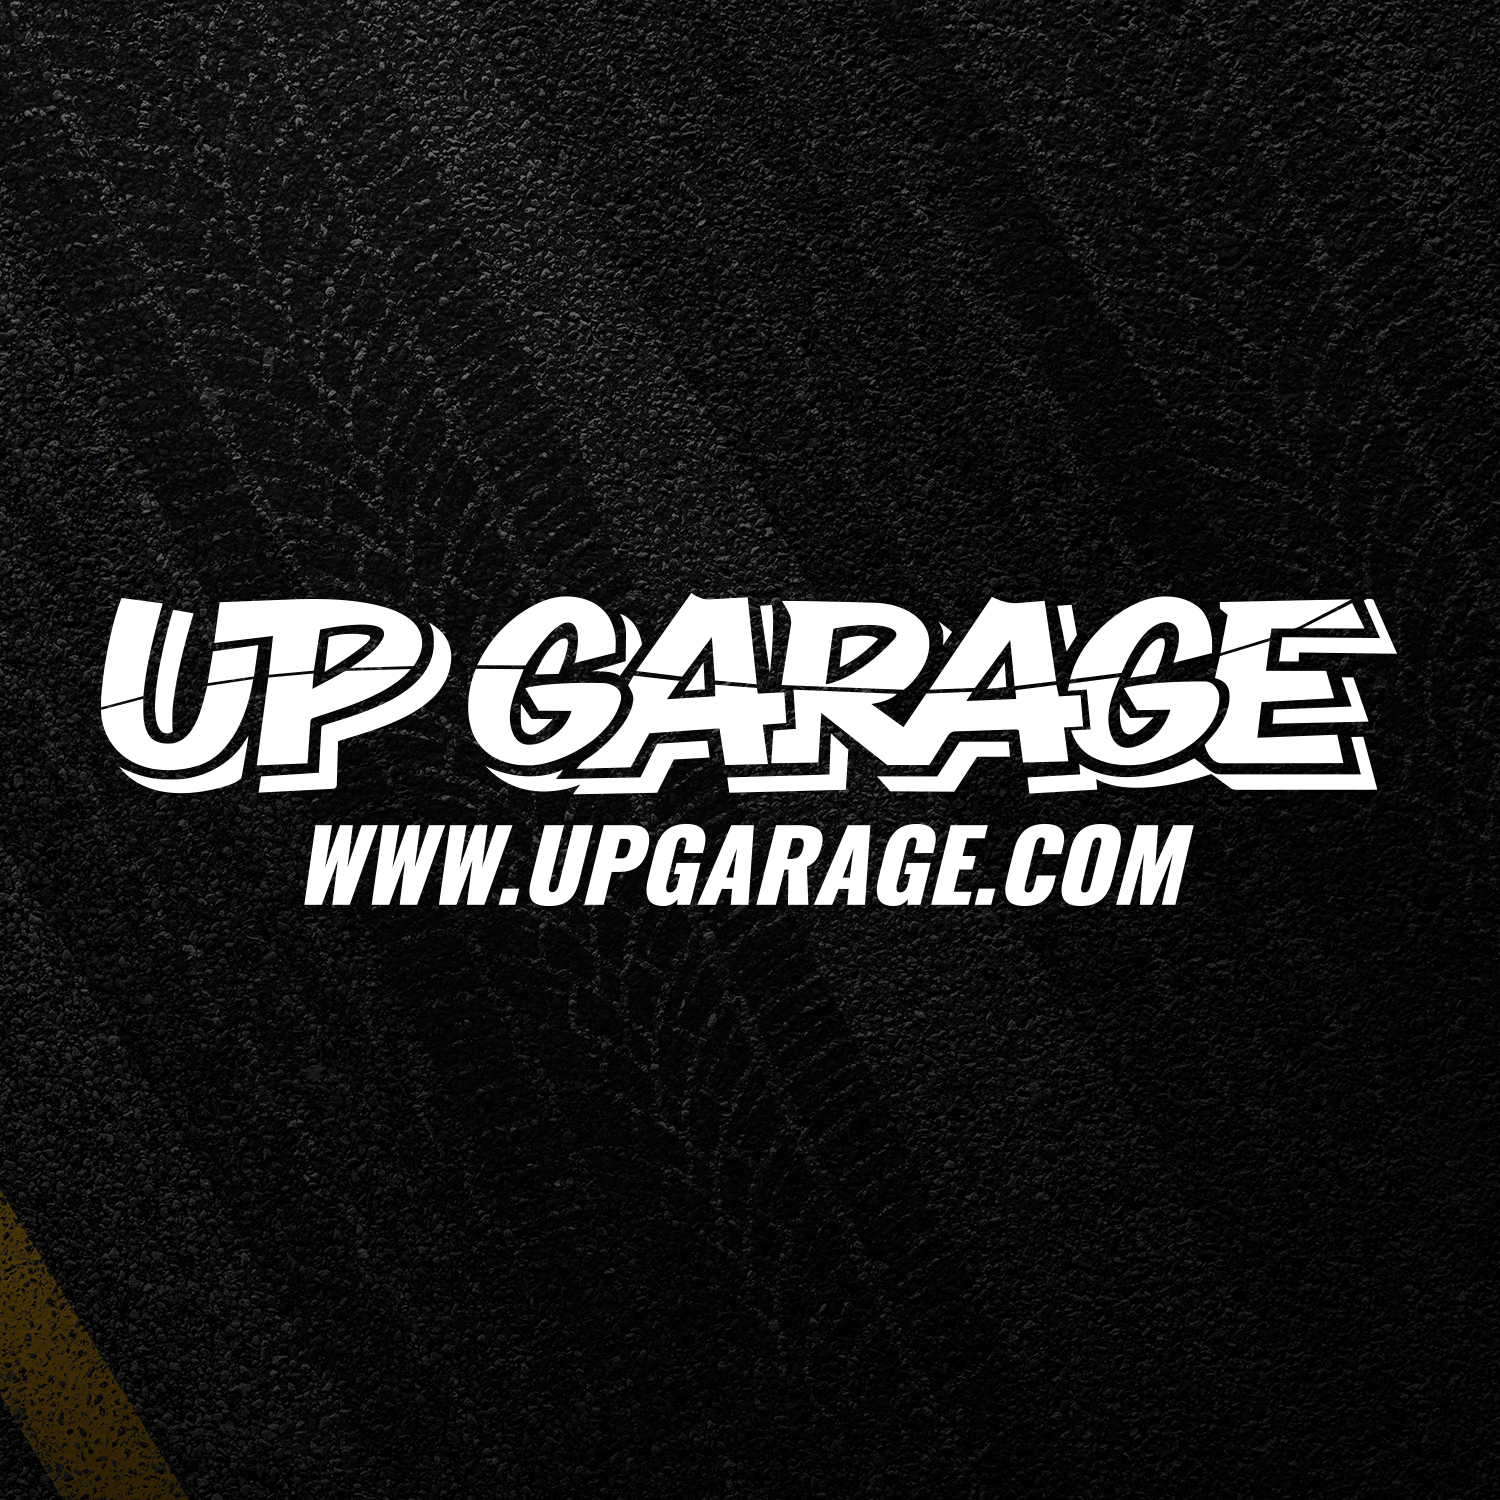 Garage up